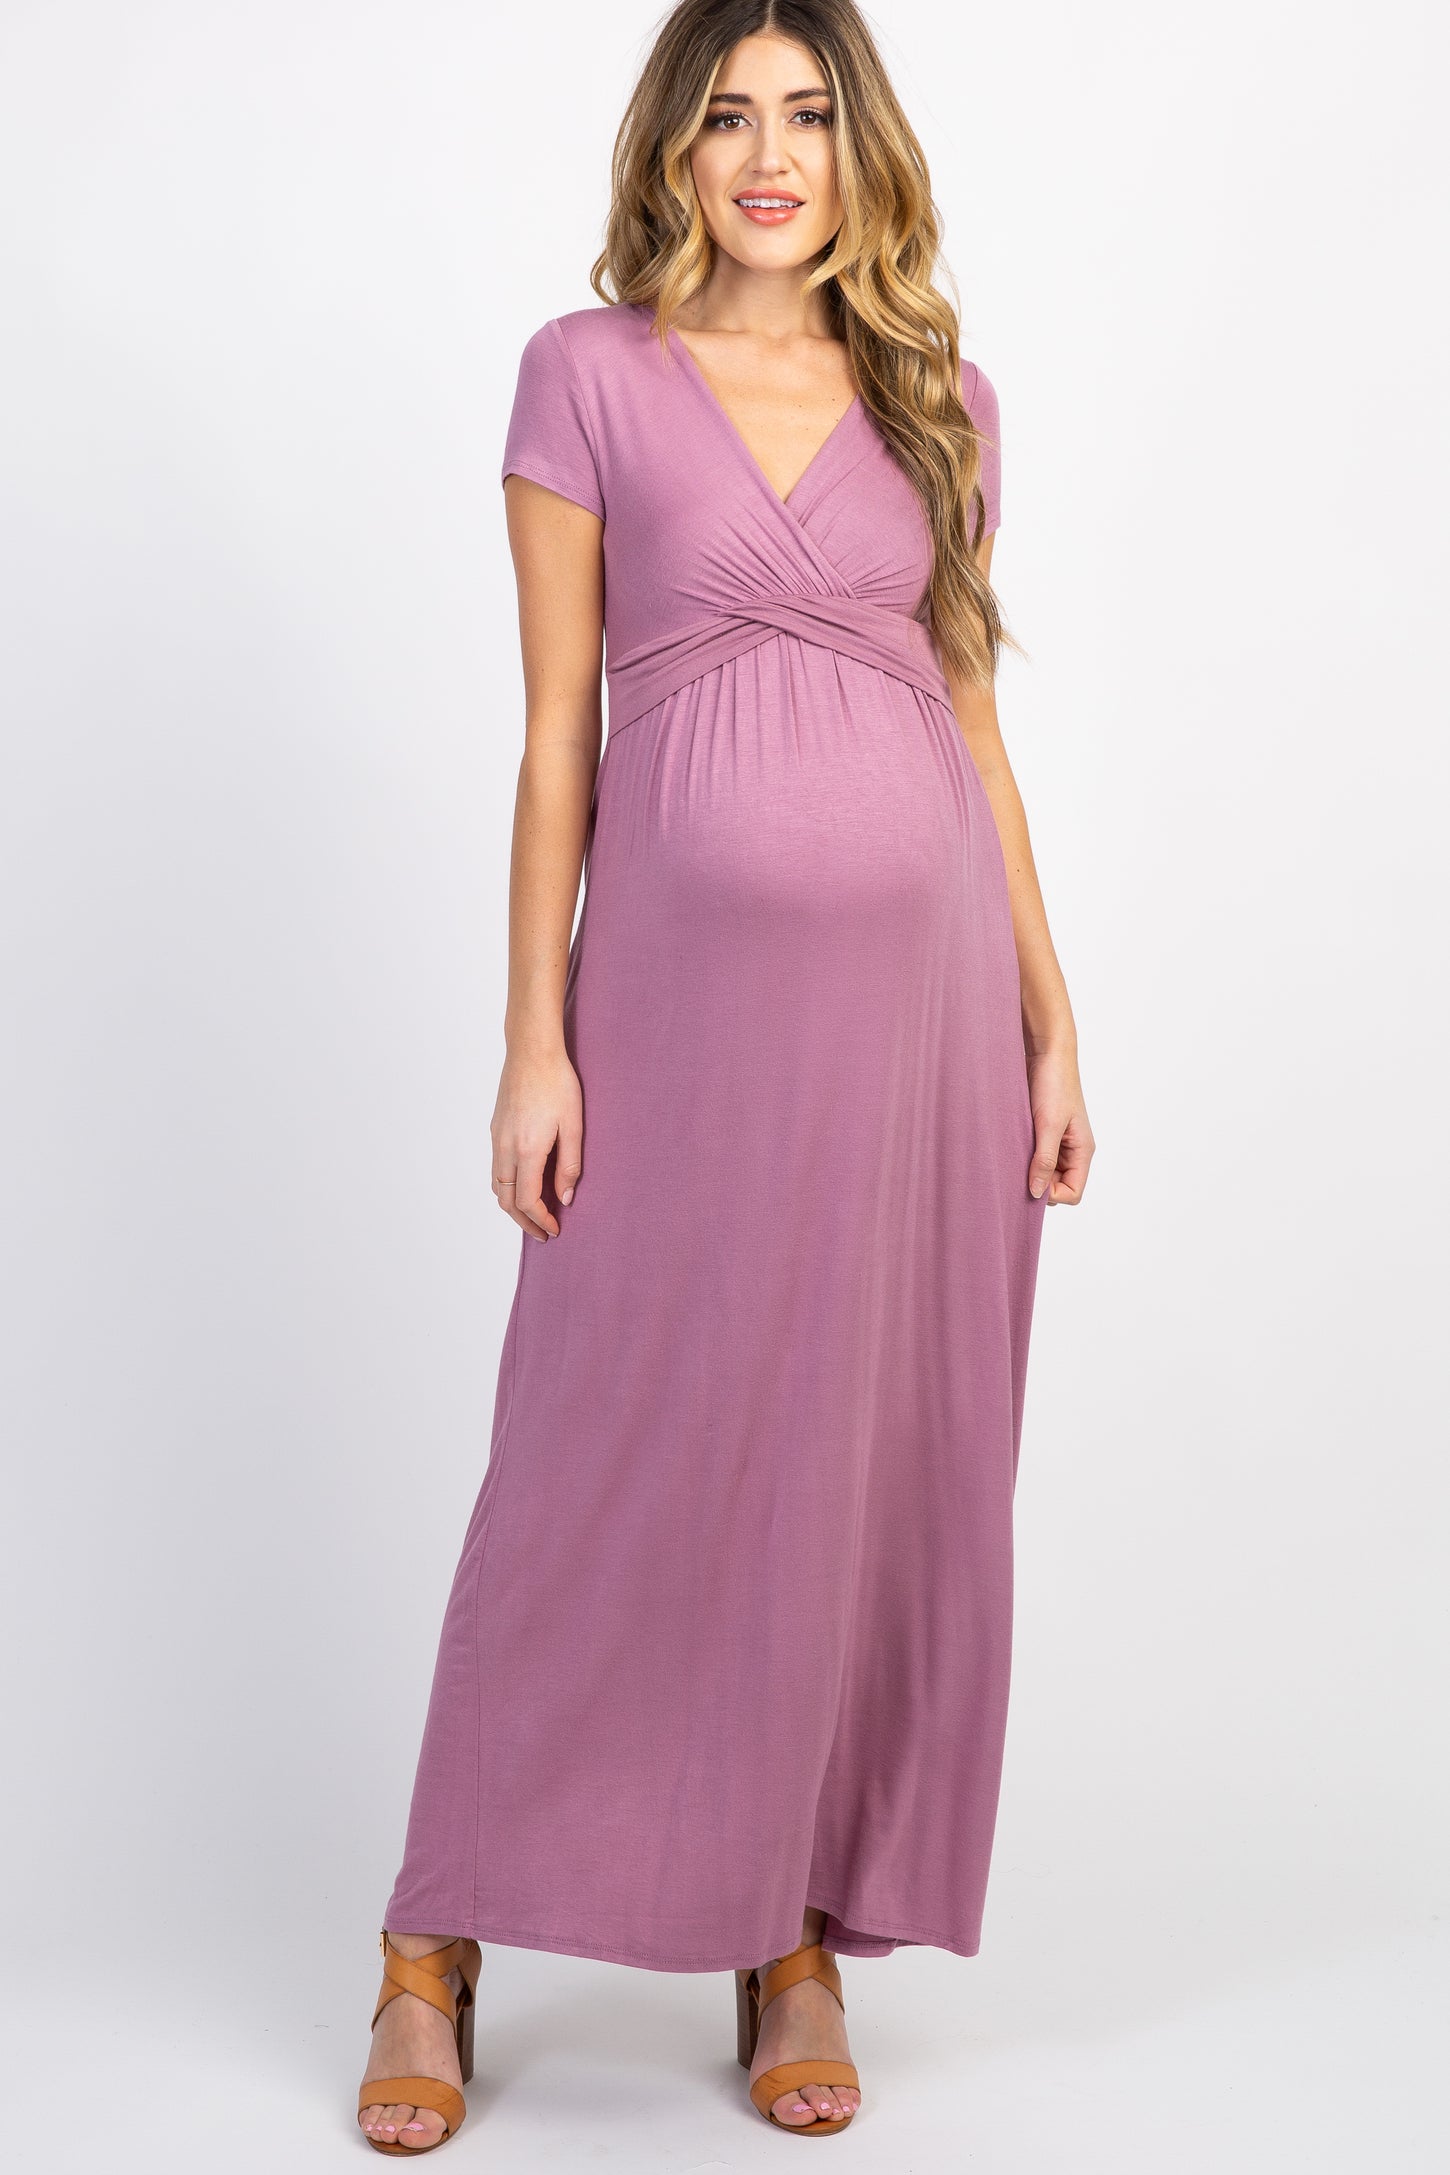 PinkBlush Mauve Draped Maternity/Nursing Maxi Dress